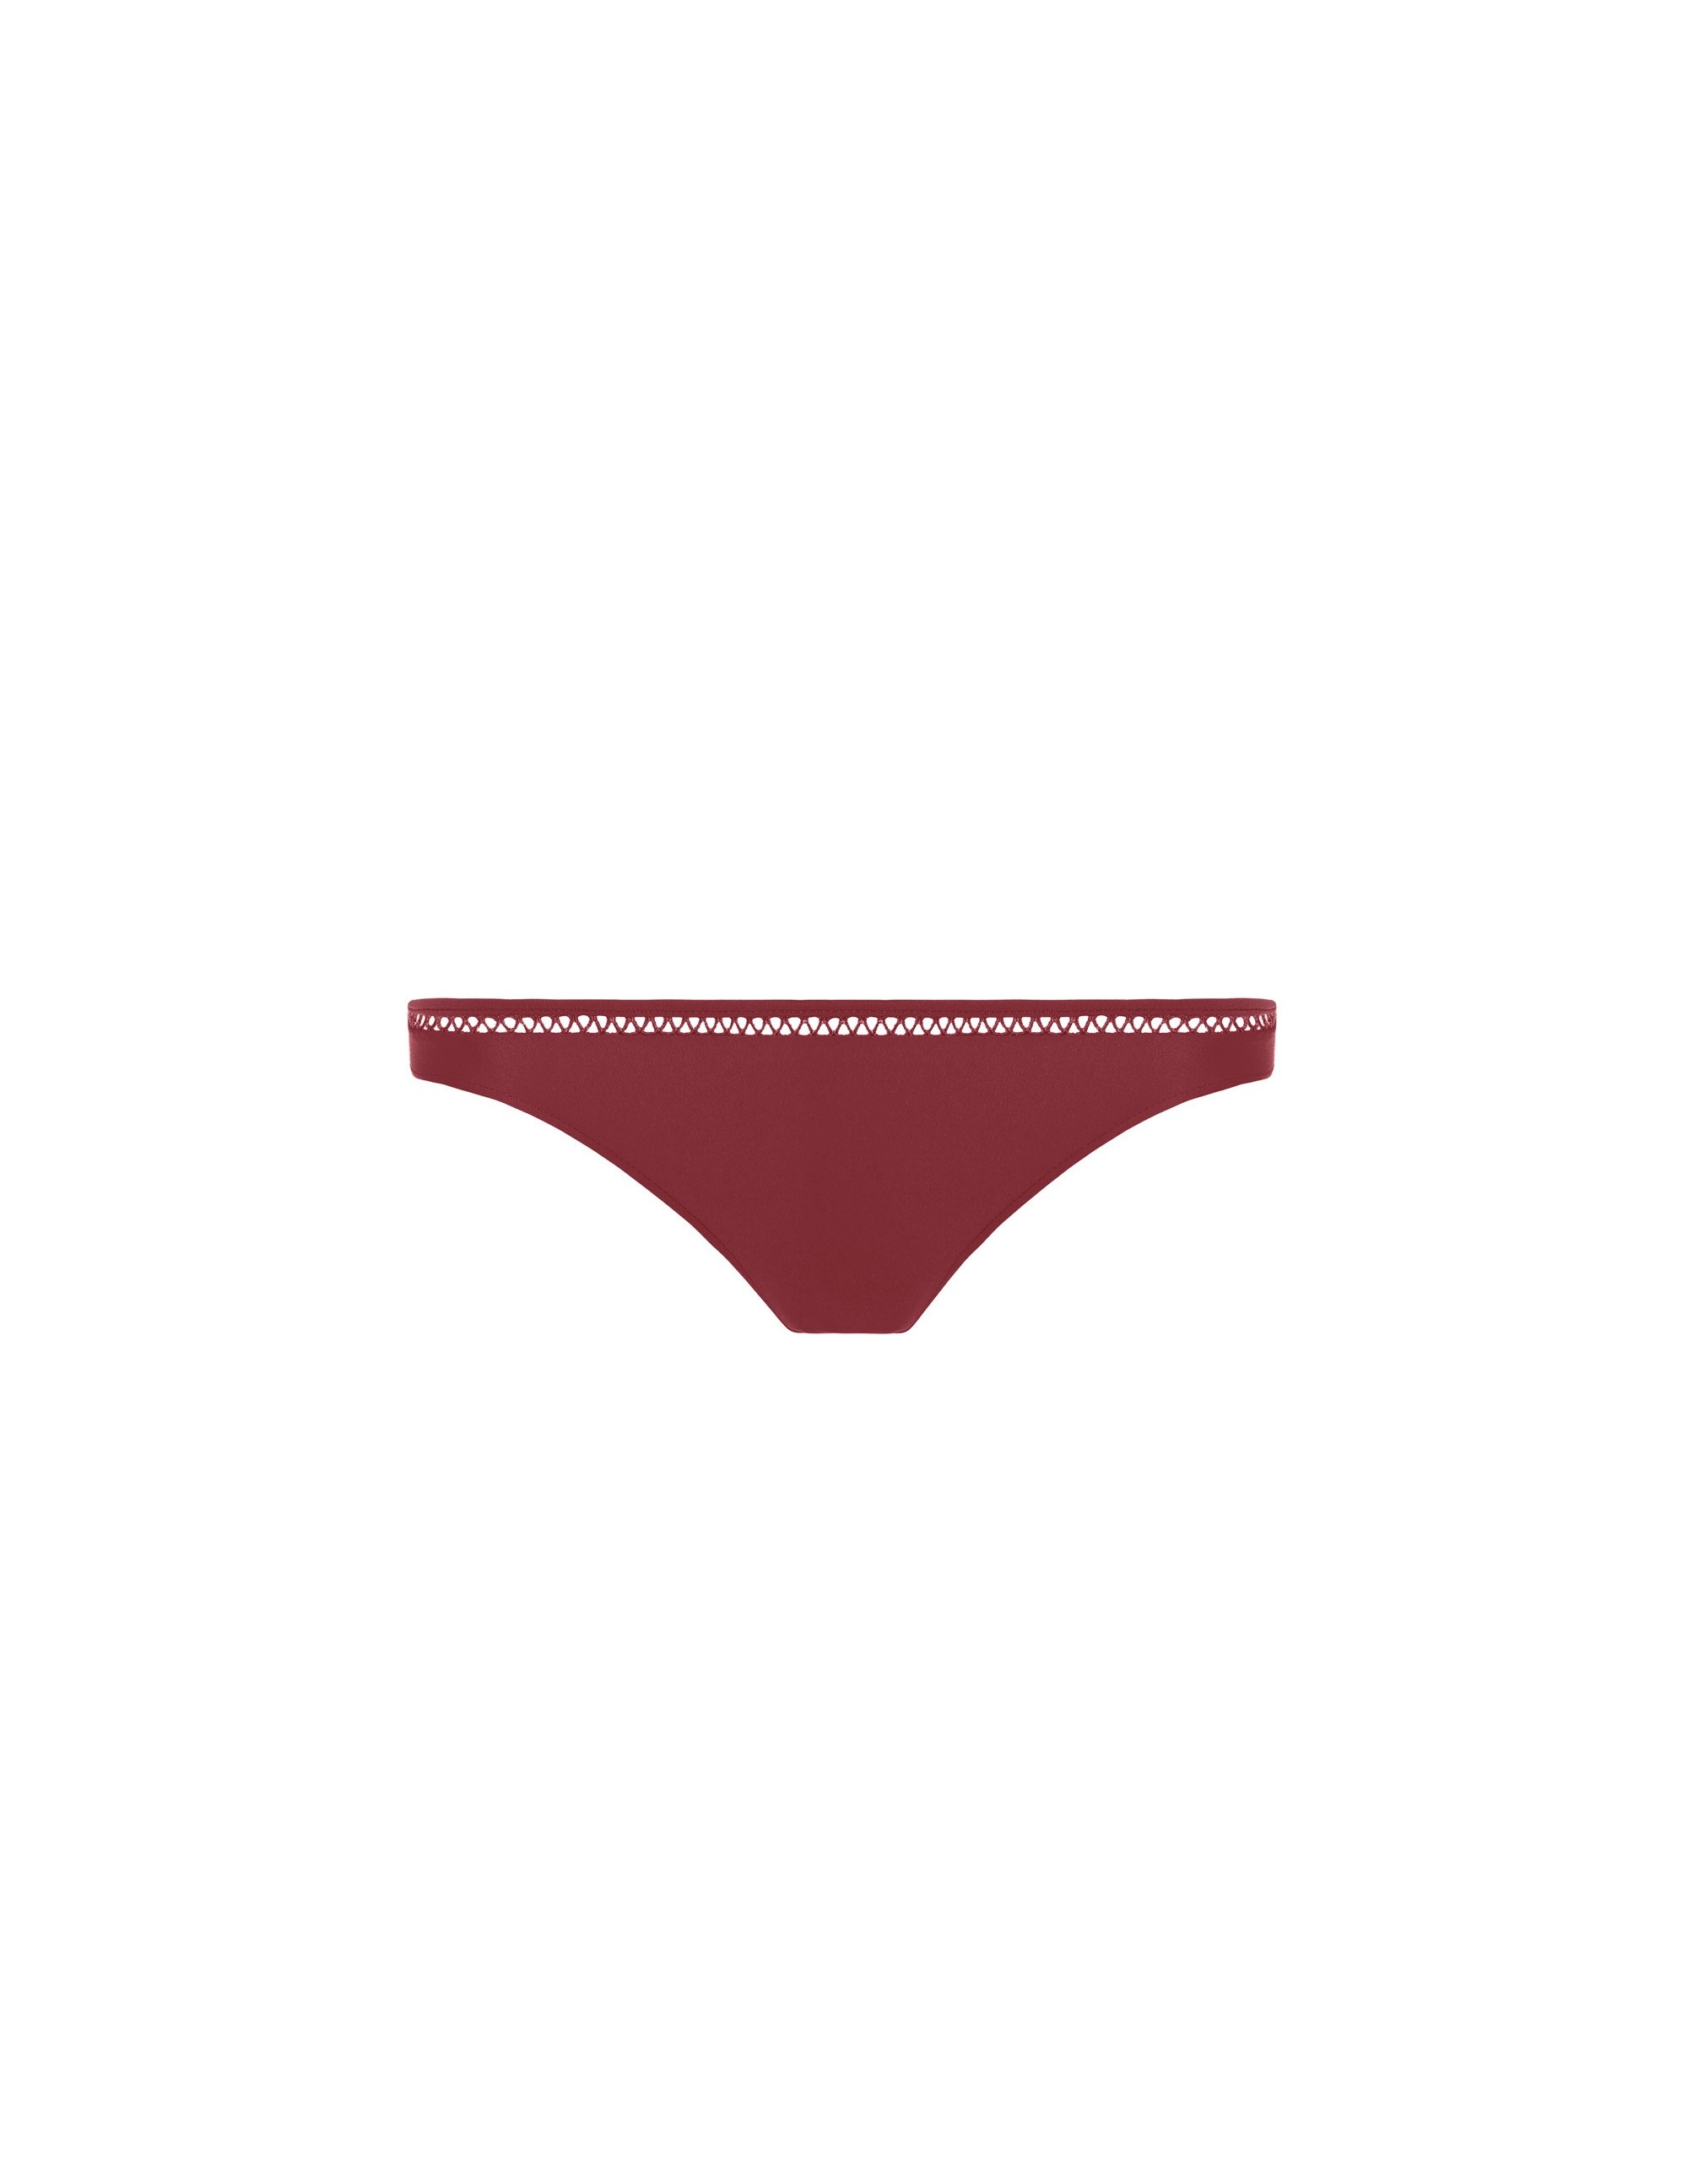 BELLA bikini bottom - MASAAI